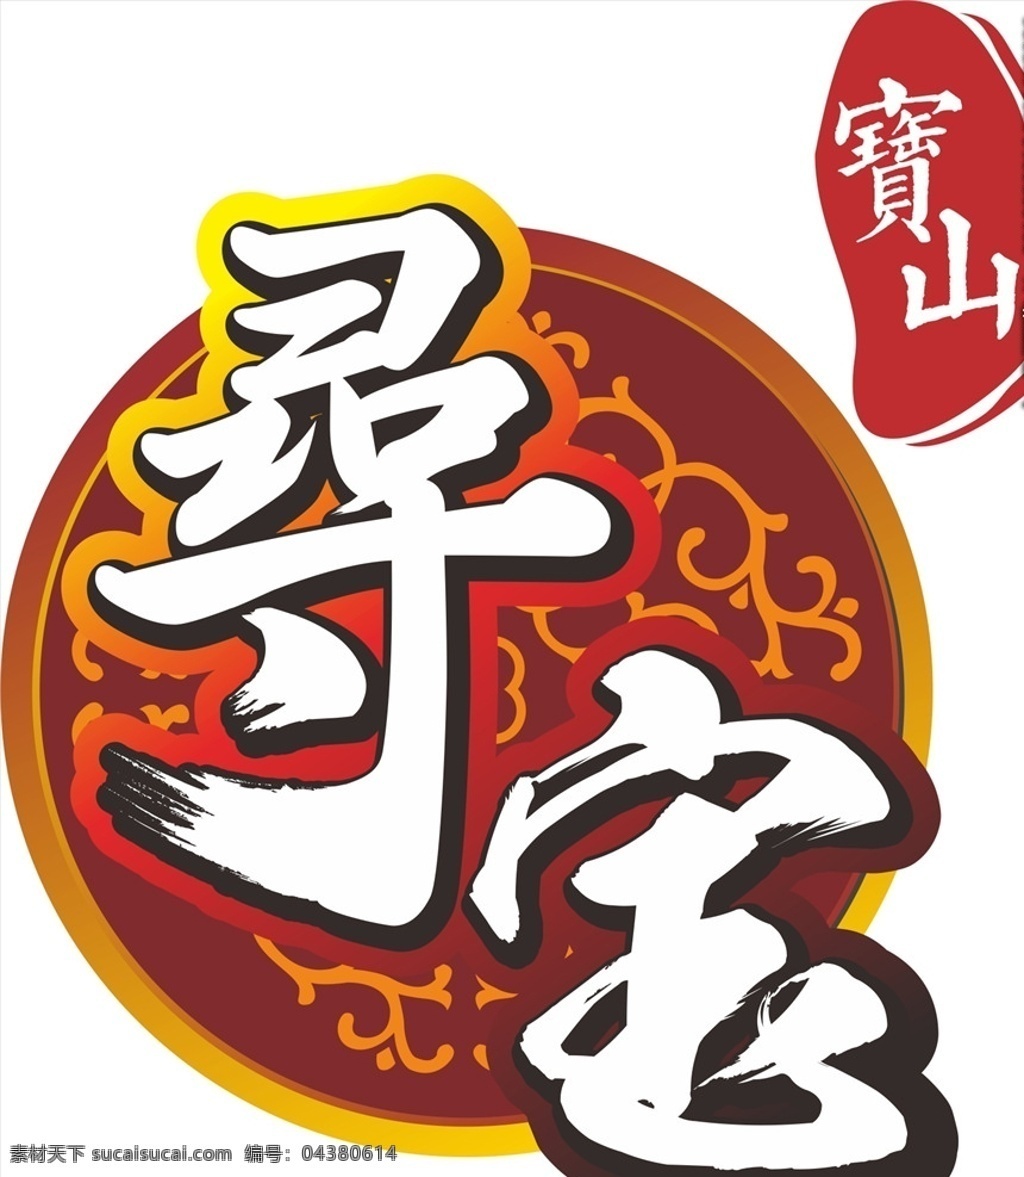 宝山 寻 宝 logo 寻宝 书法字 毛笔字 宝物 logo设计